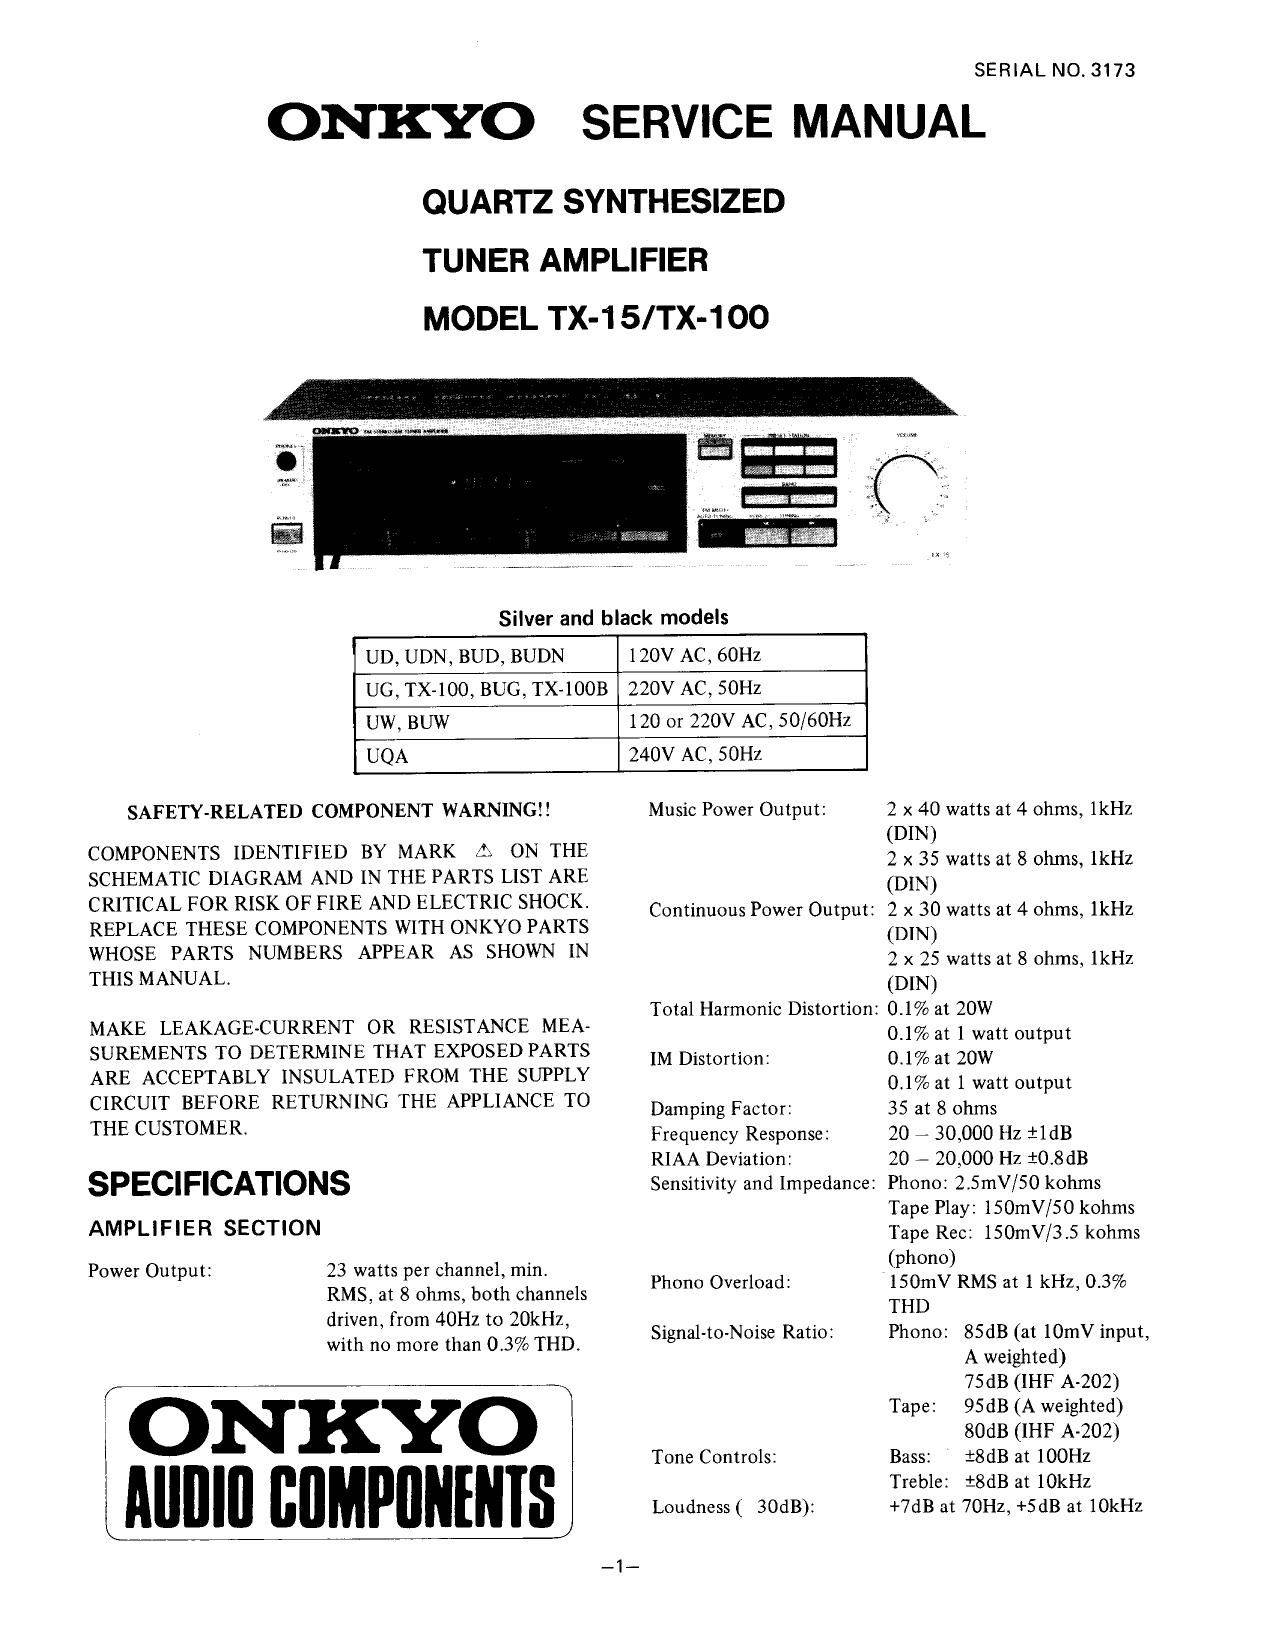 Onkyo TX-100